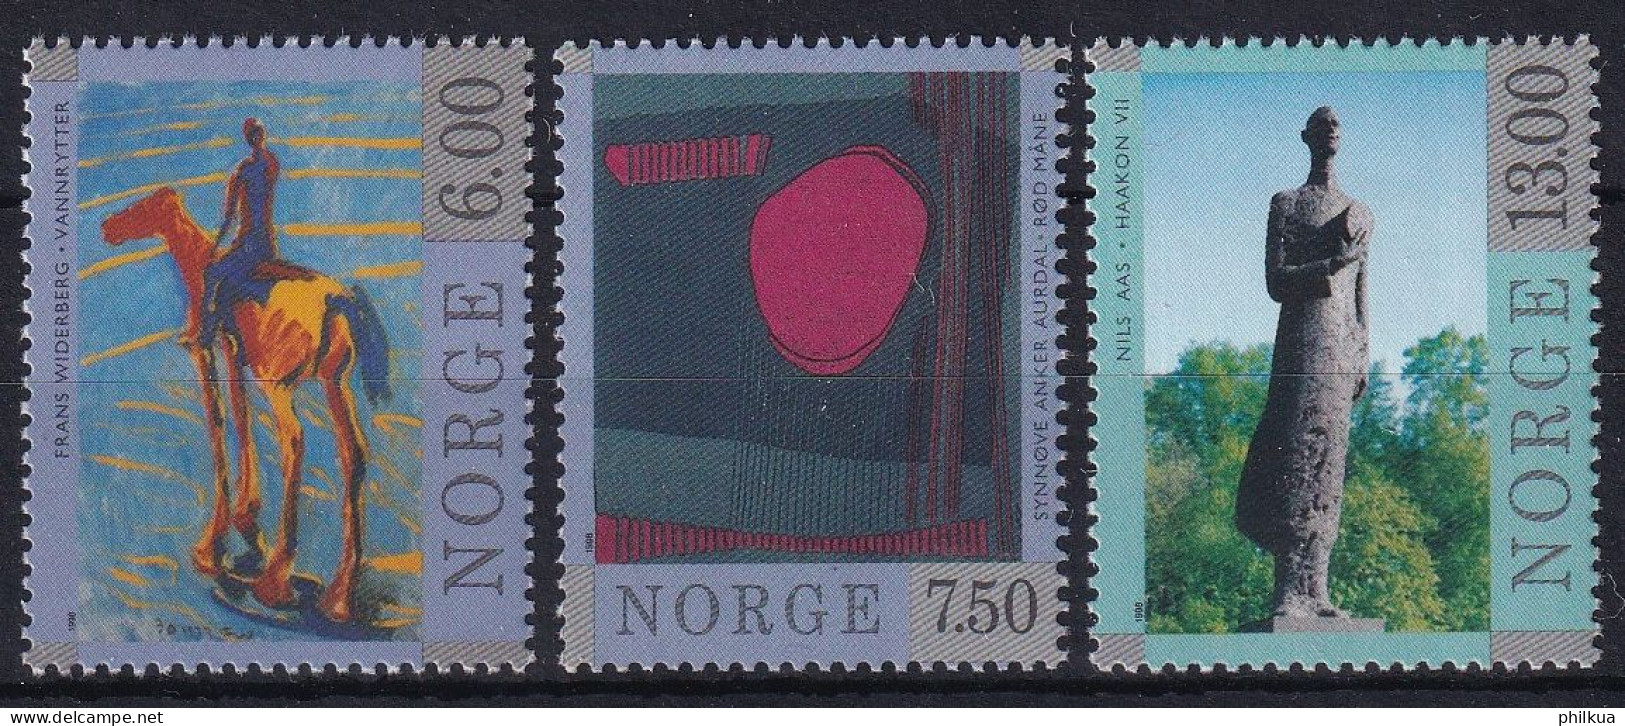 MiNr. 1287 - 1289 Norwegen       1998, 18. Juni. Zeitgenössische Kunst - Postfrisch/**/MNH - Unused Stamps